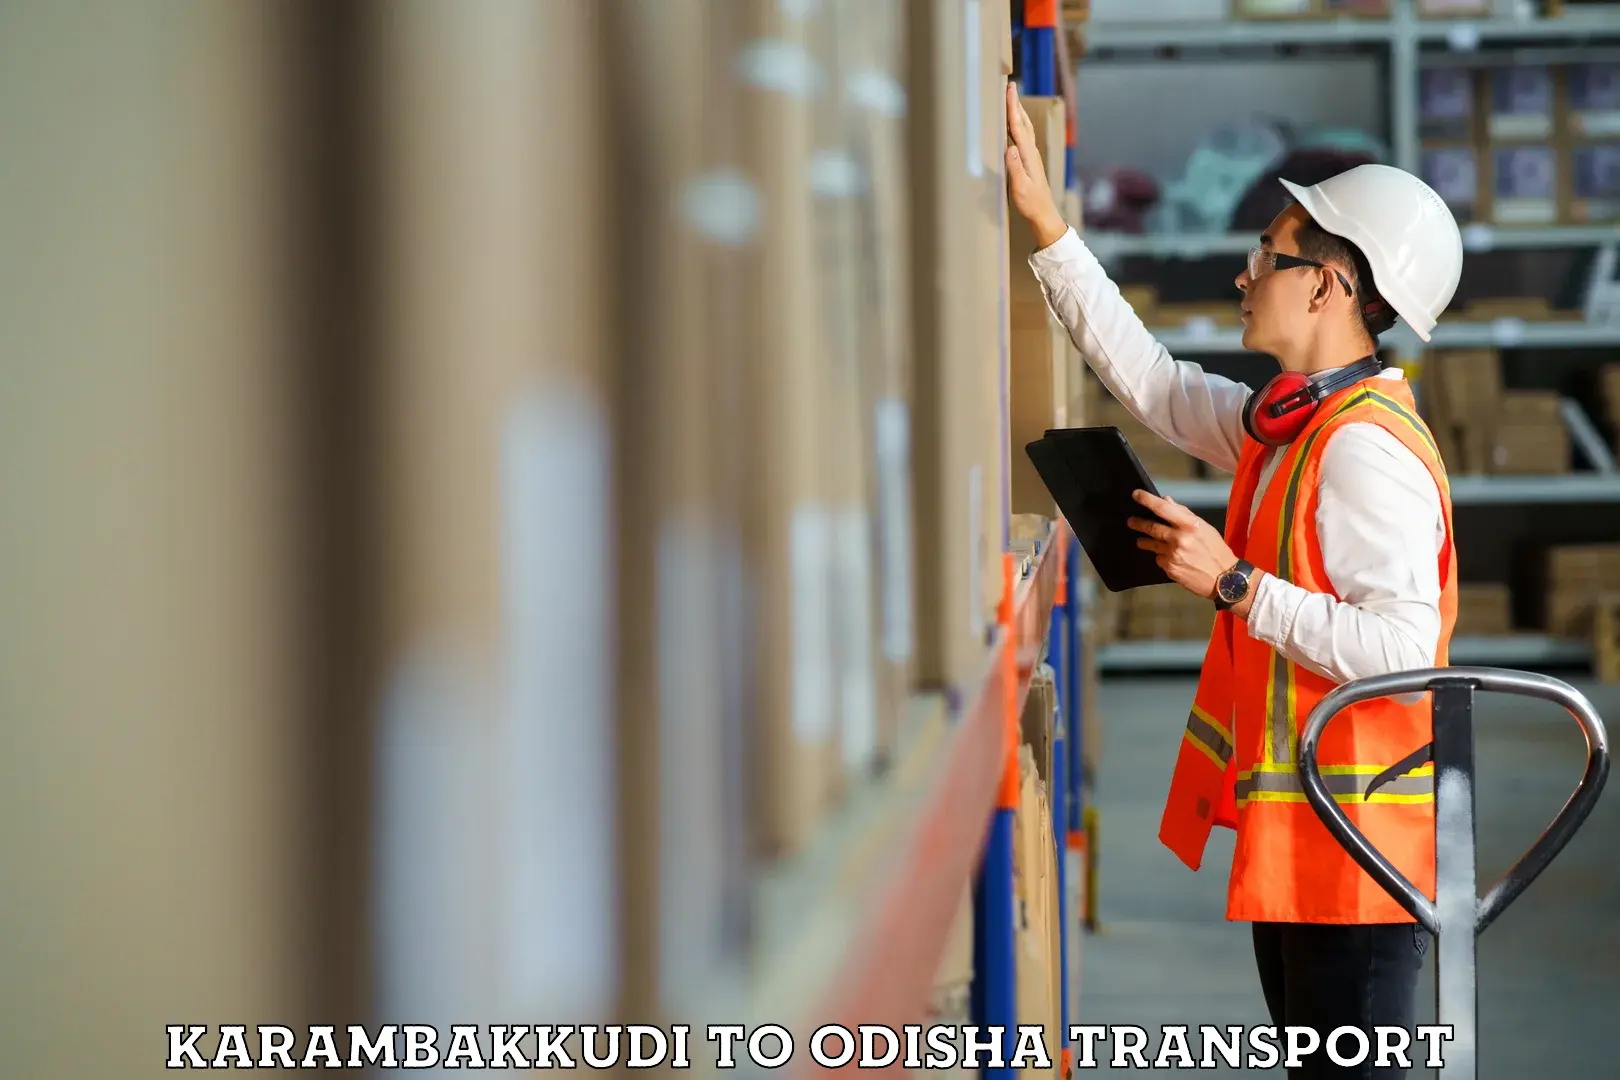 Furniture transport service Karambakkudi to Jashipur